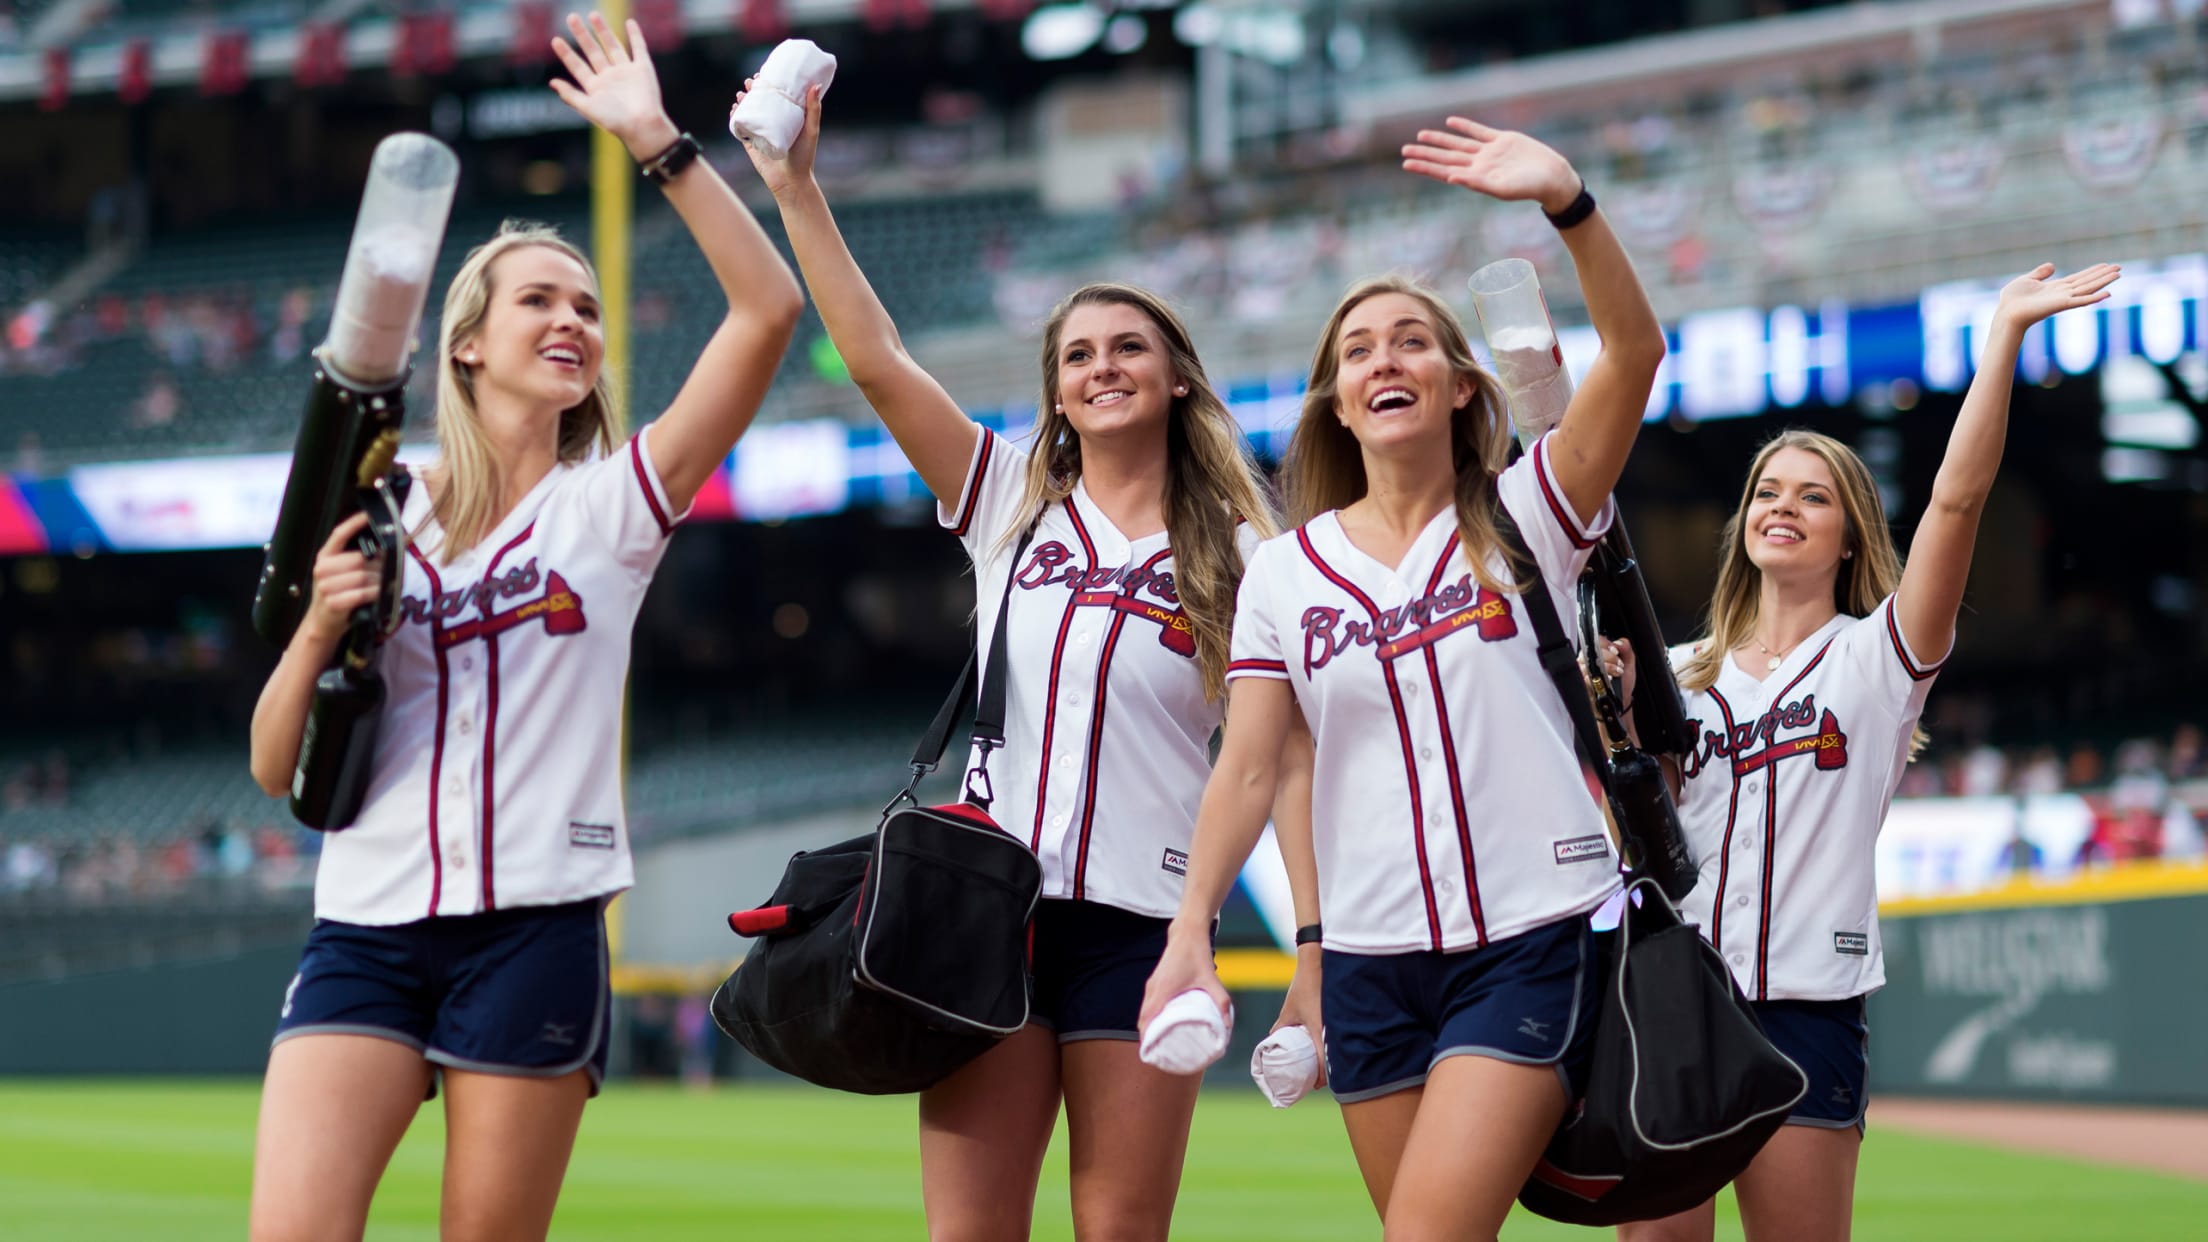 Best Atlanta Braves fan gifts & gear for women in 2023 